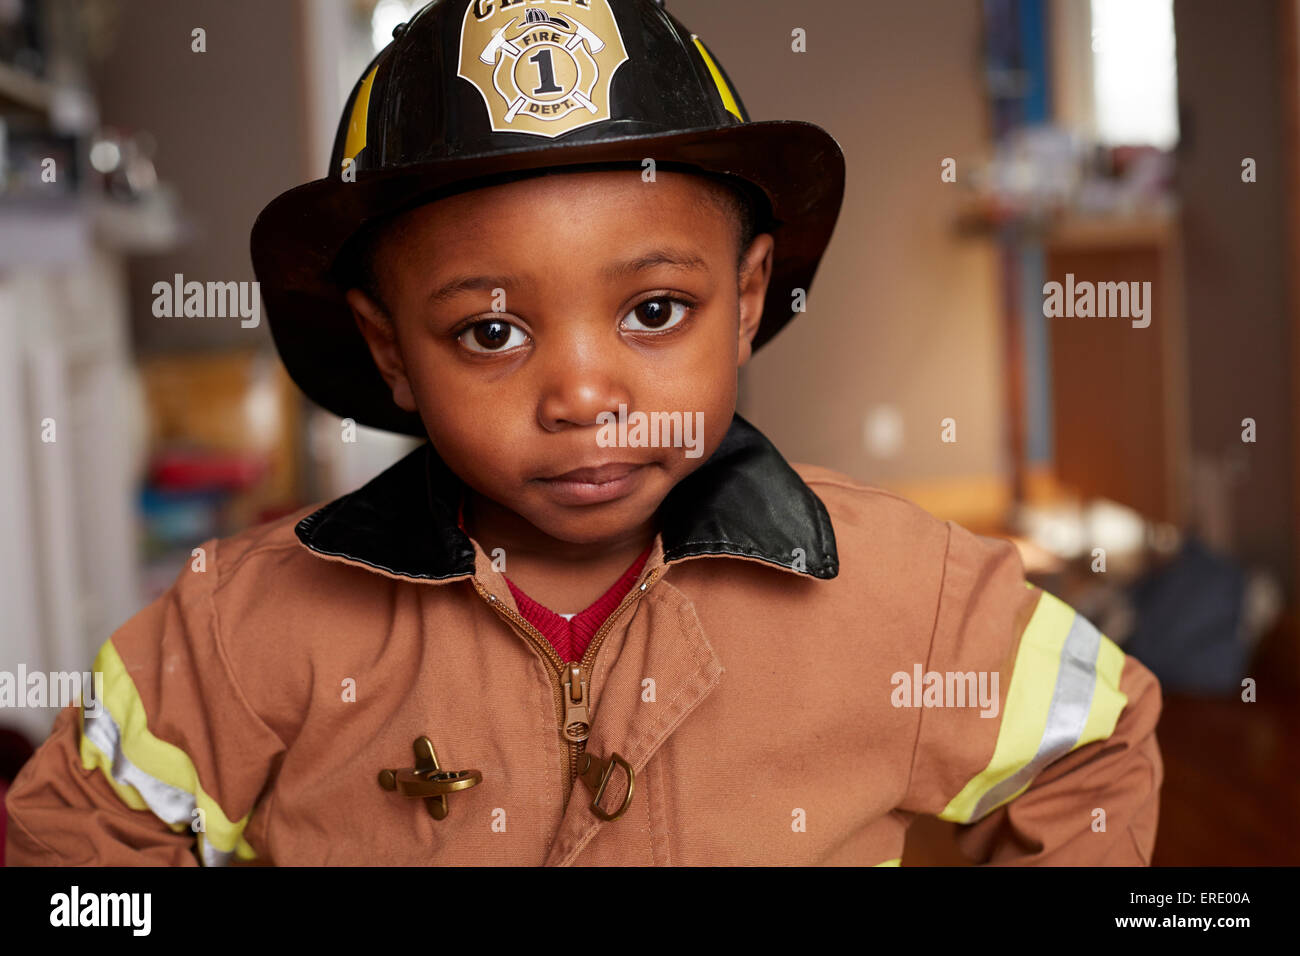 Schwarzer Junge Feuerwehrmann Halloween-Kostüm Stockfoto